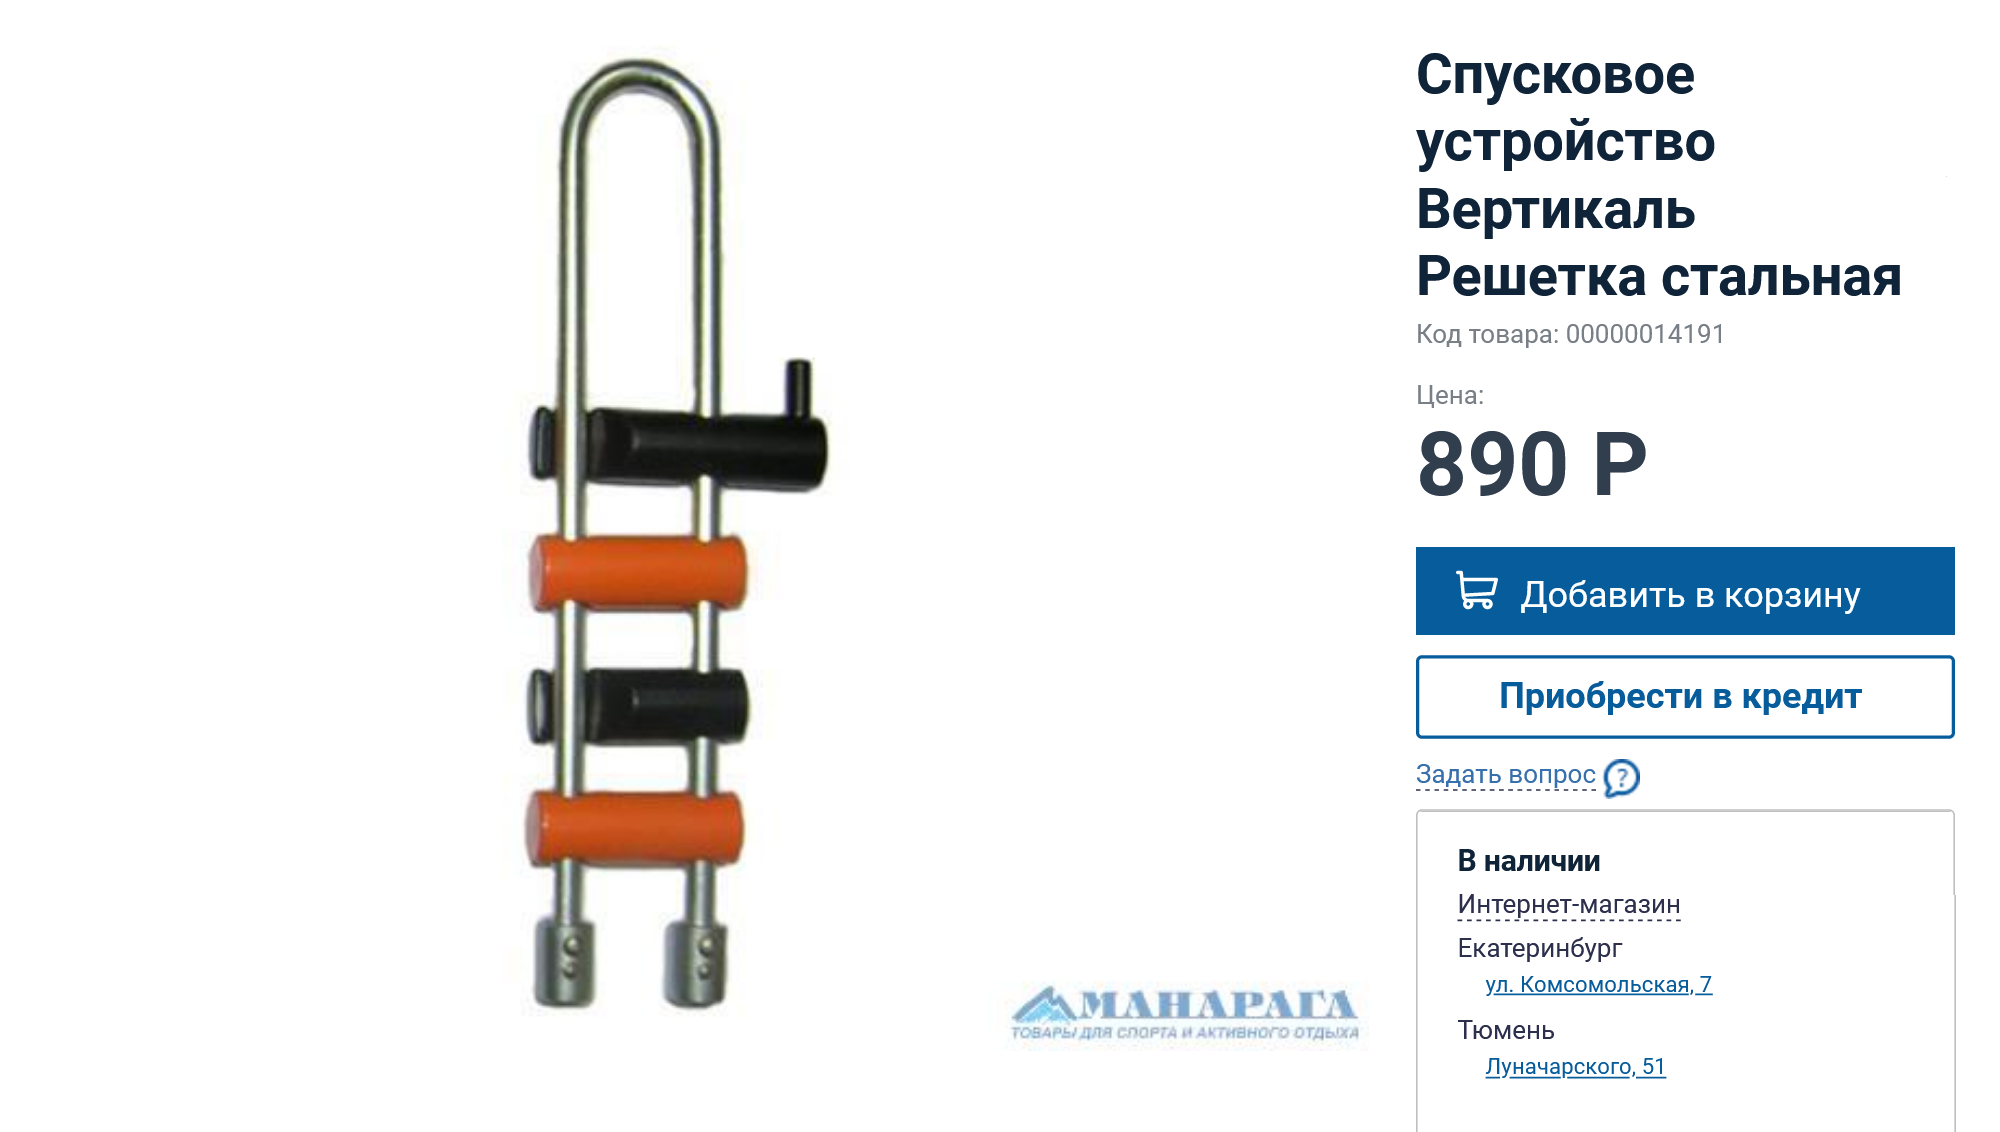 Никите много лет служила самая дешевая решетка «Вертикаль». Сейчас она стоит 890 ₽. Источник: manaraga.ru